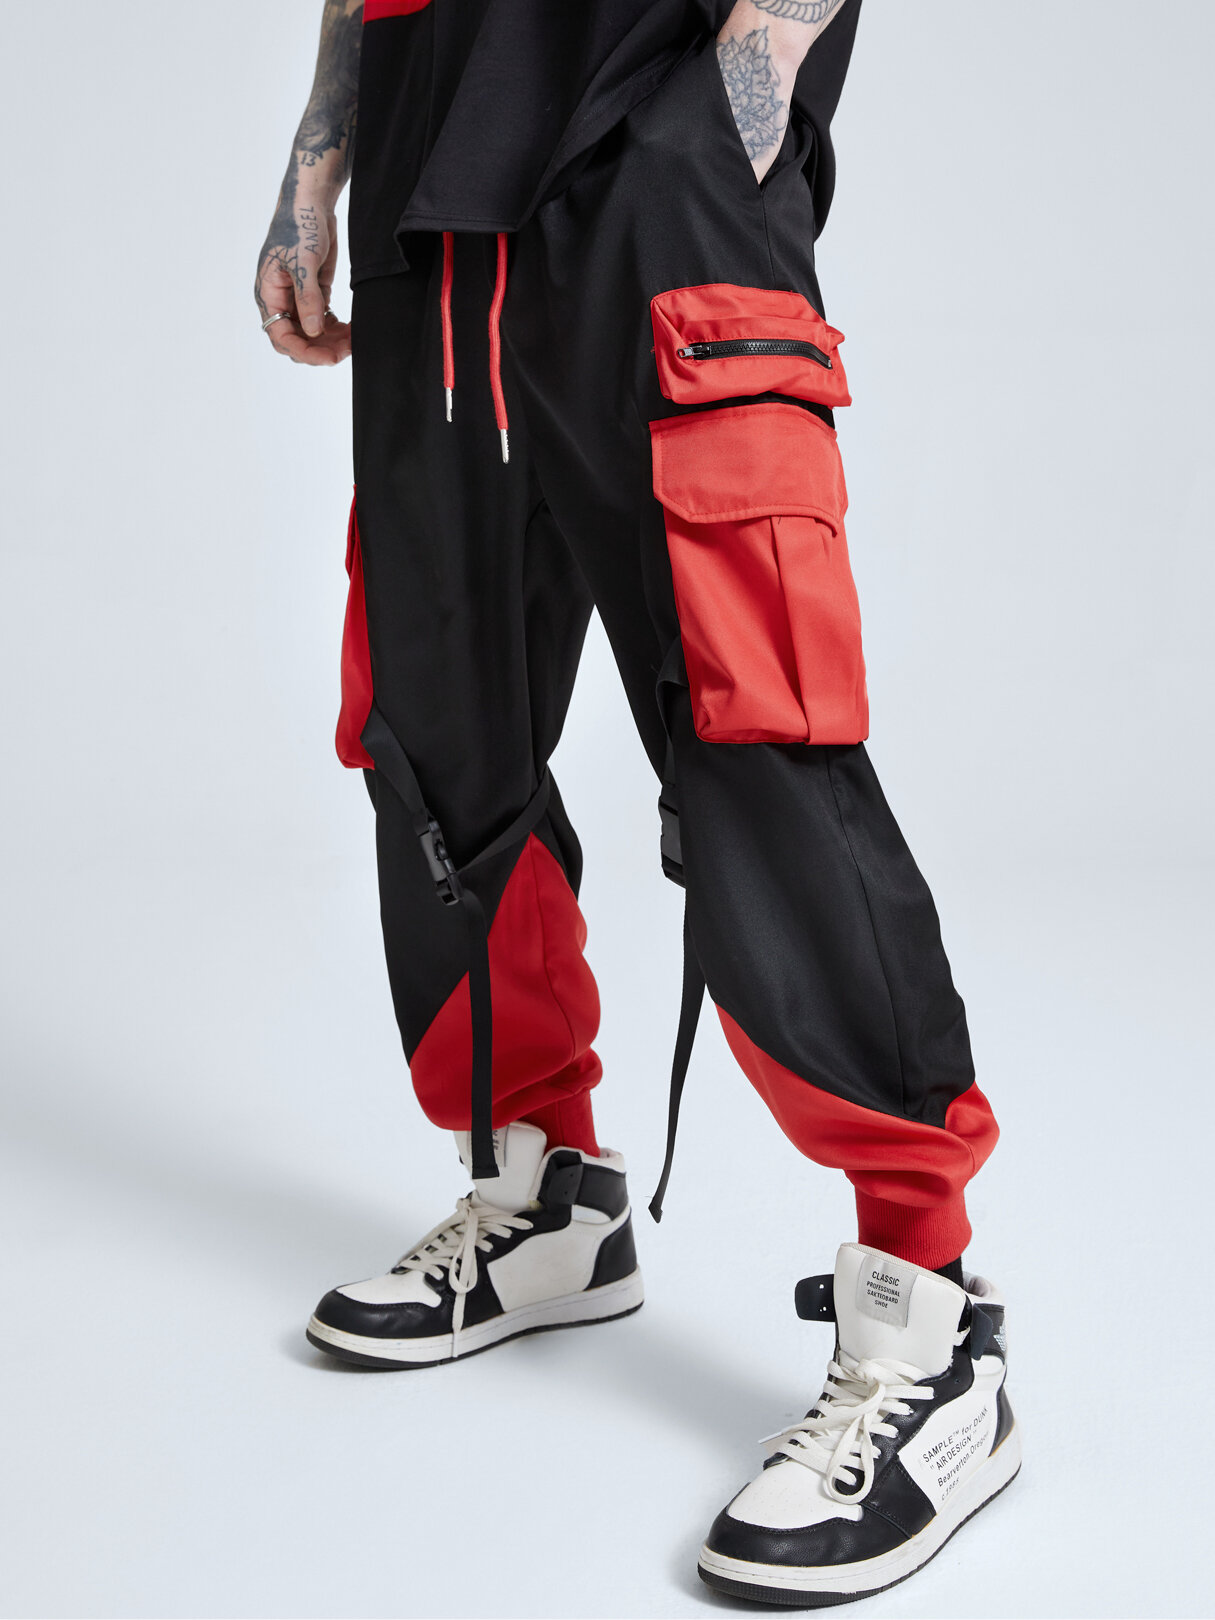 पुरुष कंट्रास्ट कलर जिपर और पॉकेट डिजाइन कार्गो पैंट